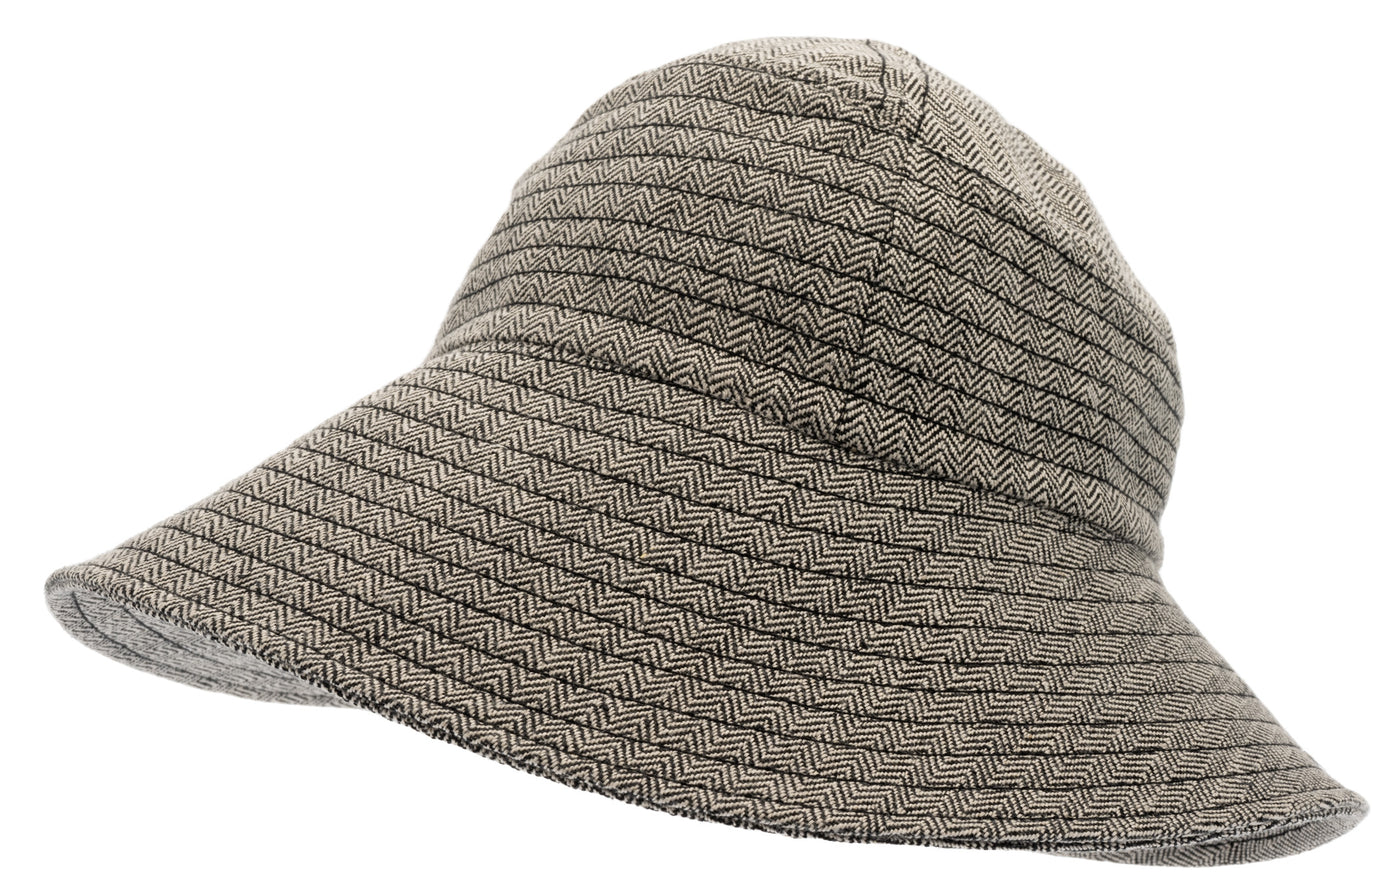 Svensktillverkad hatt i svart tyg från Växbo lin